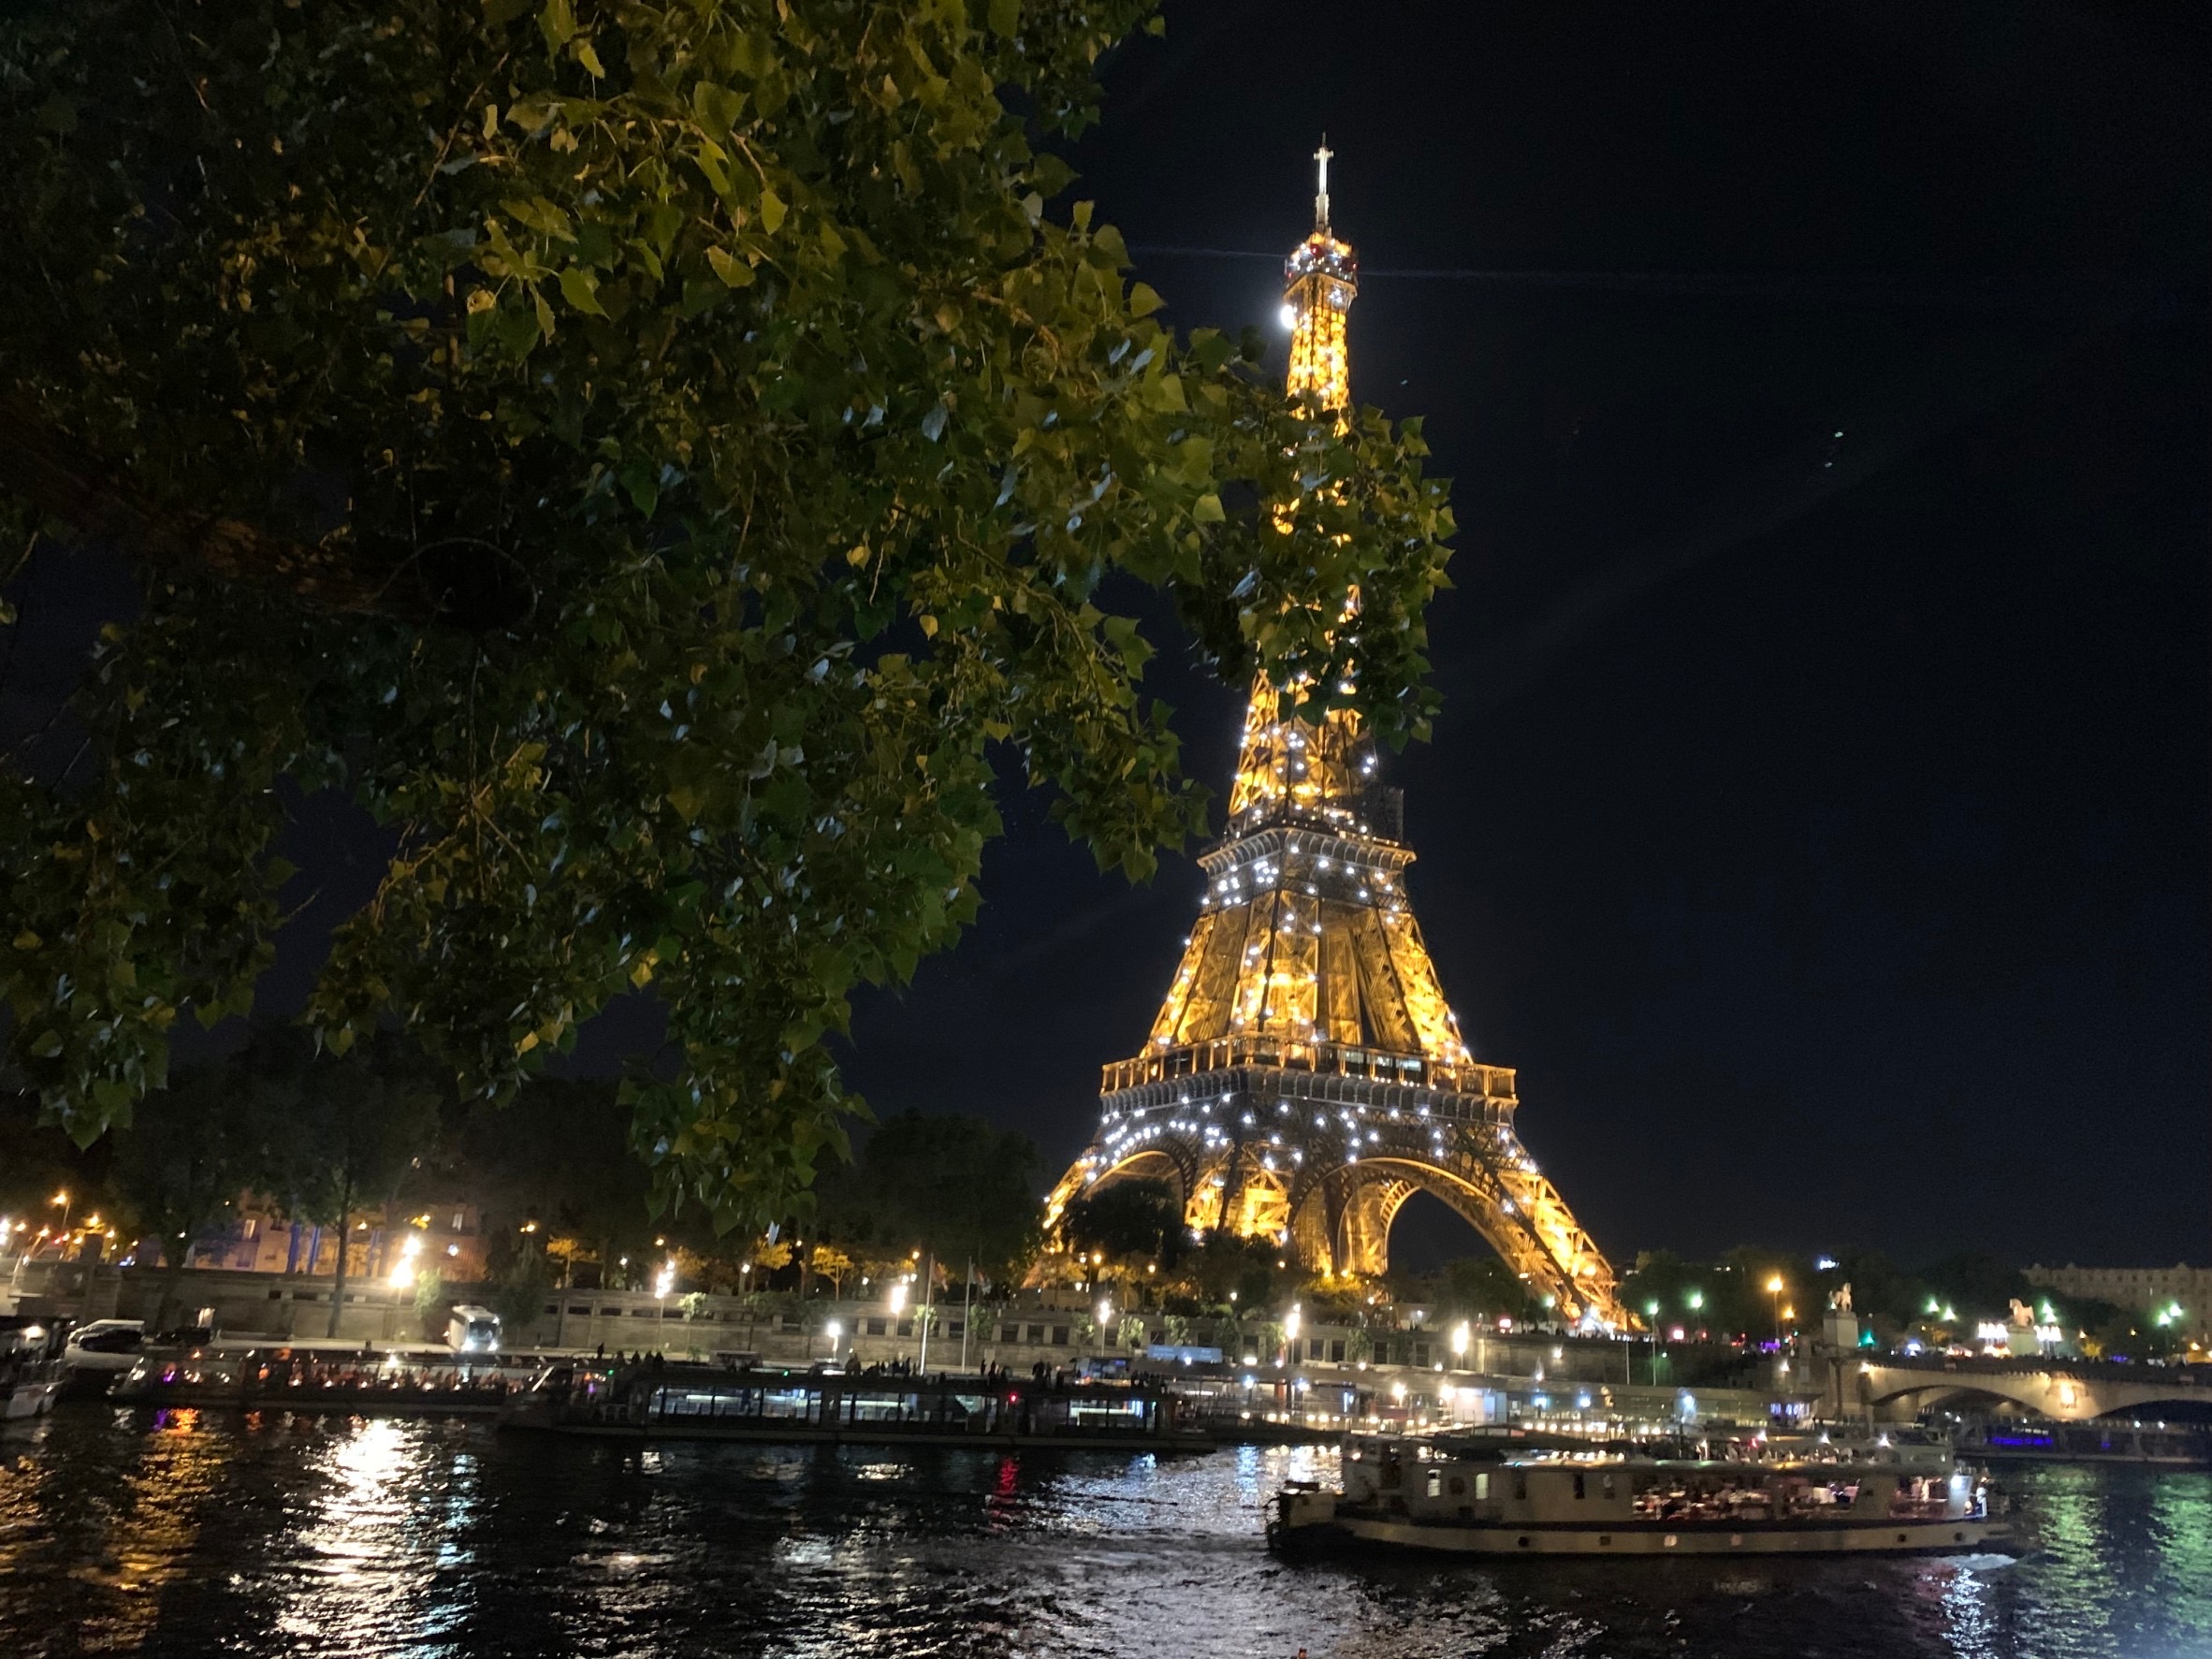 退屈日記「パリの夜散歩。エッフェル塔の袂は大勢の人で賑わっていた」